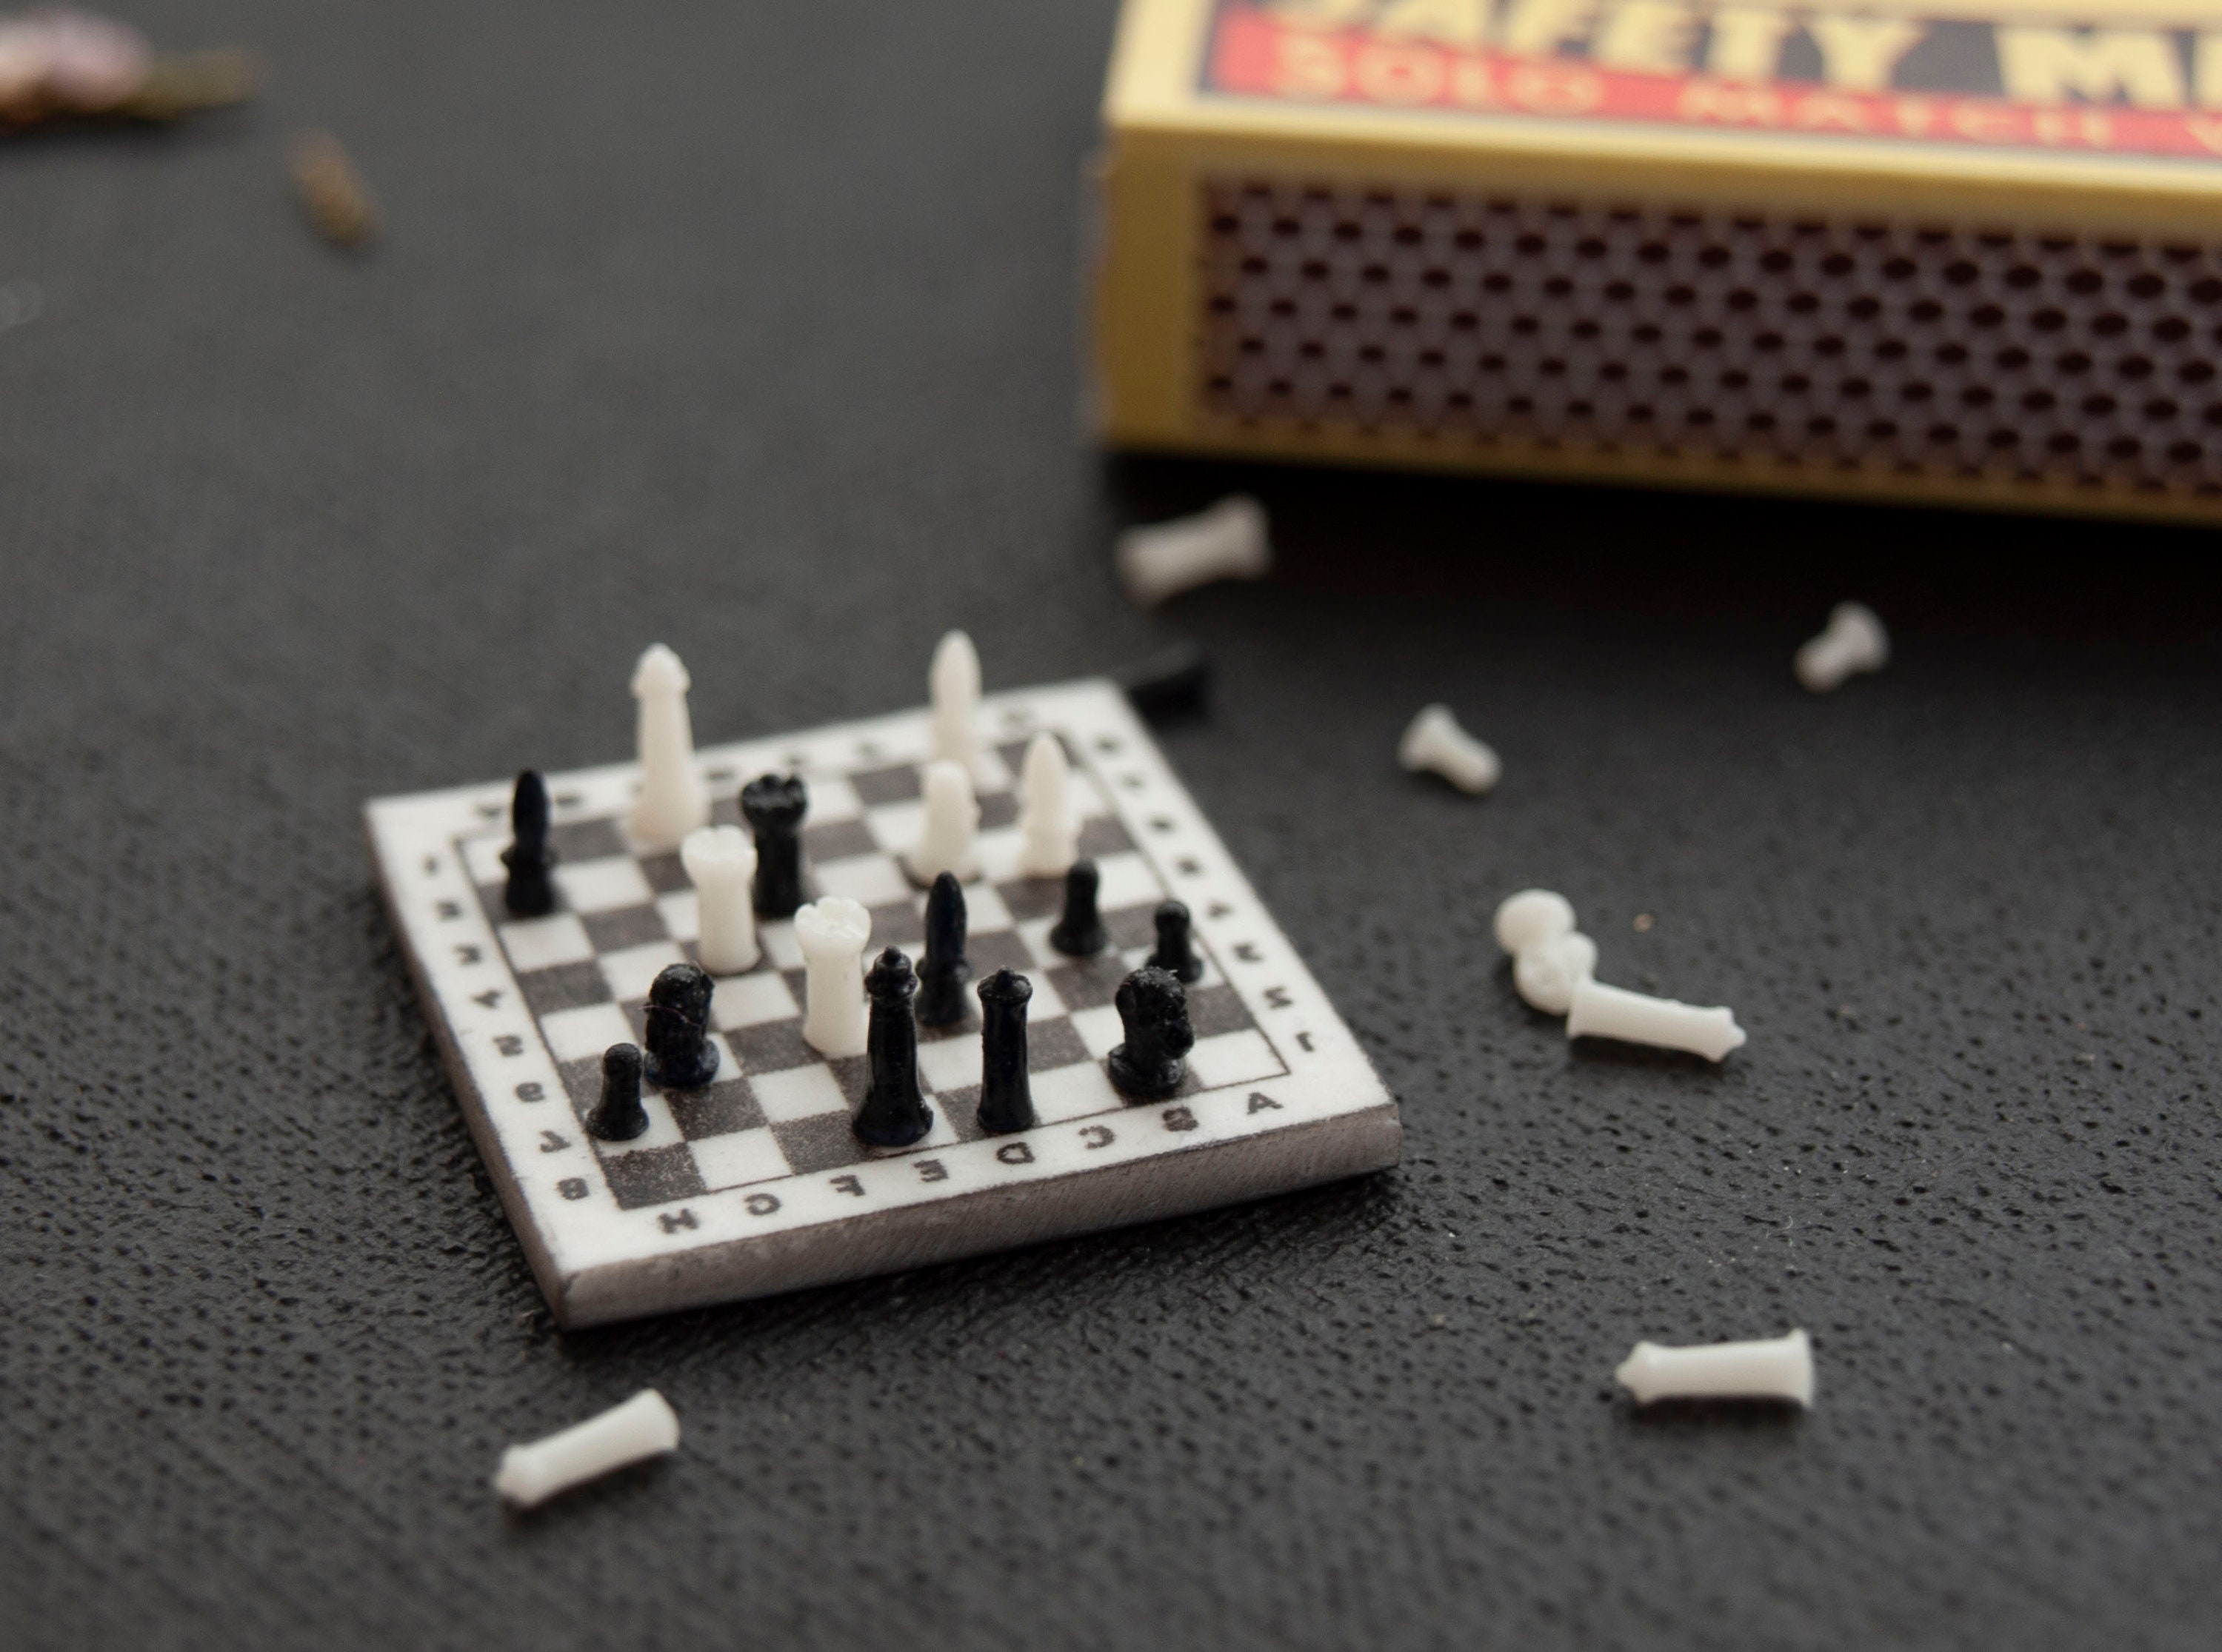 Handmade Miniature Travelling Chess Set Game in Pokerwork Box, Circa 1900